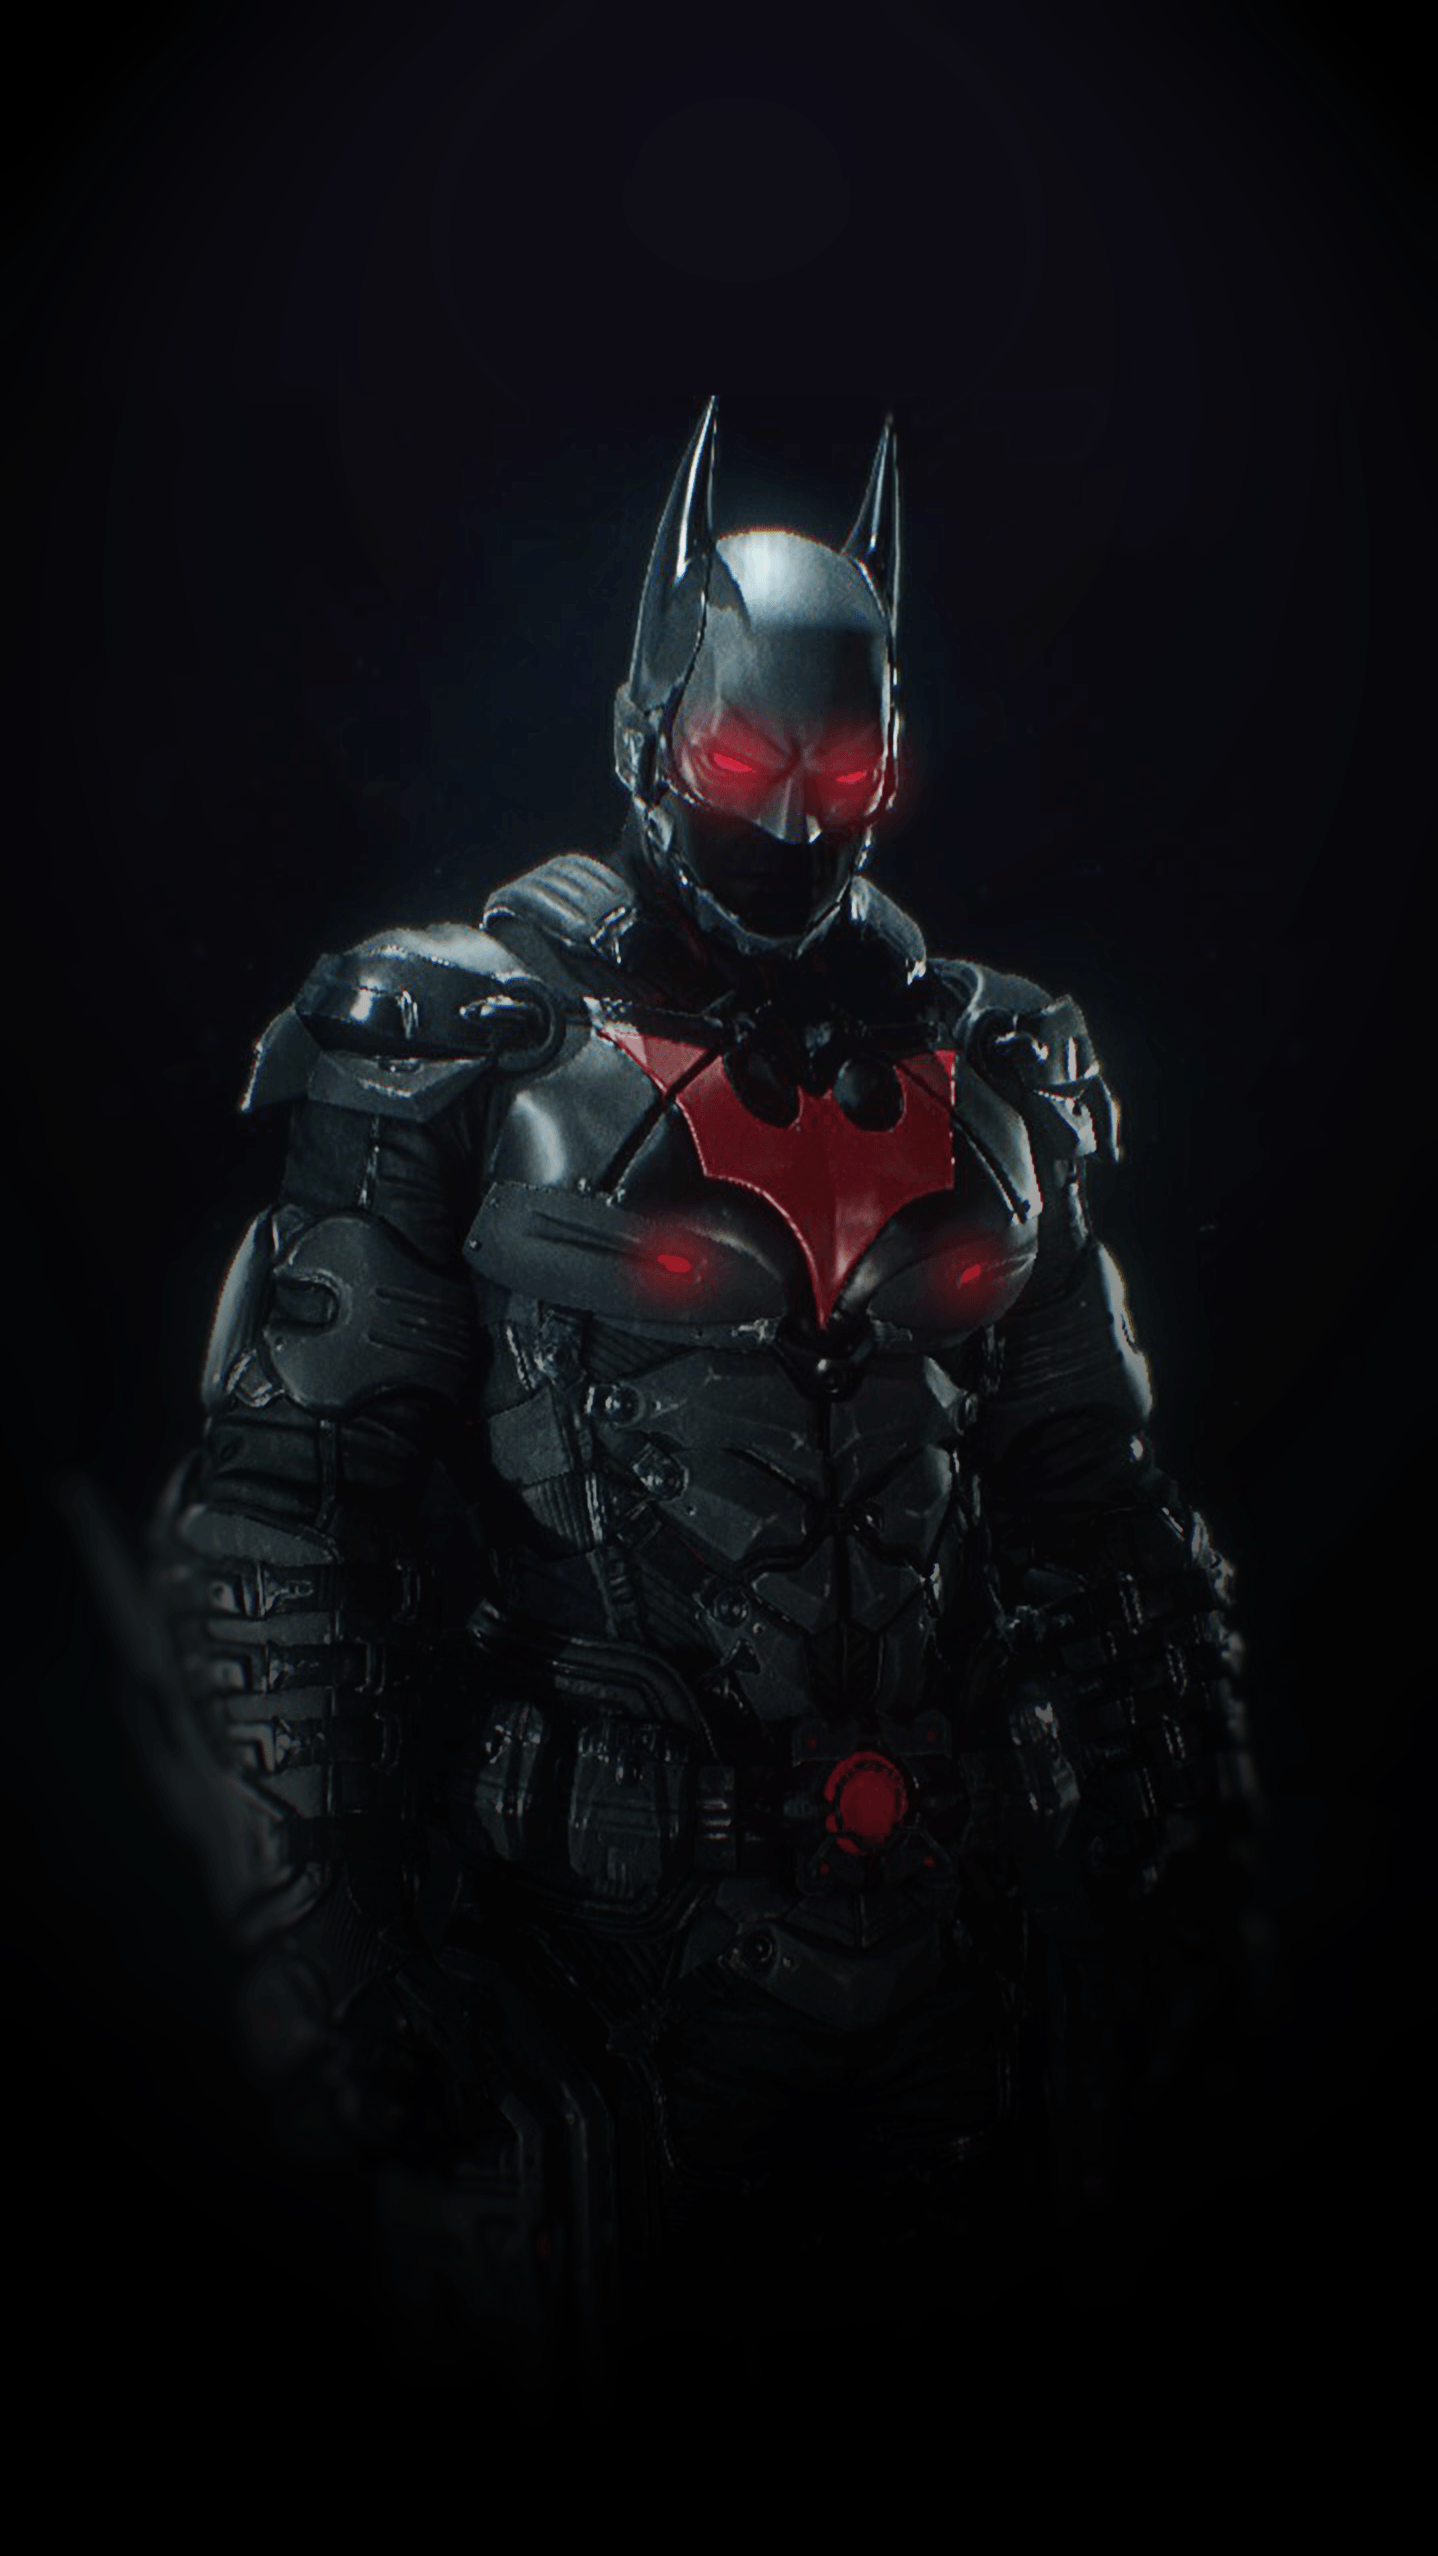 Batman Arkham Knight Suit, Batman Beyond Skin. A wallpaper made